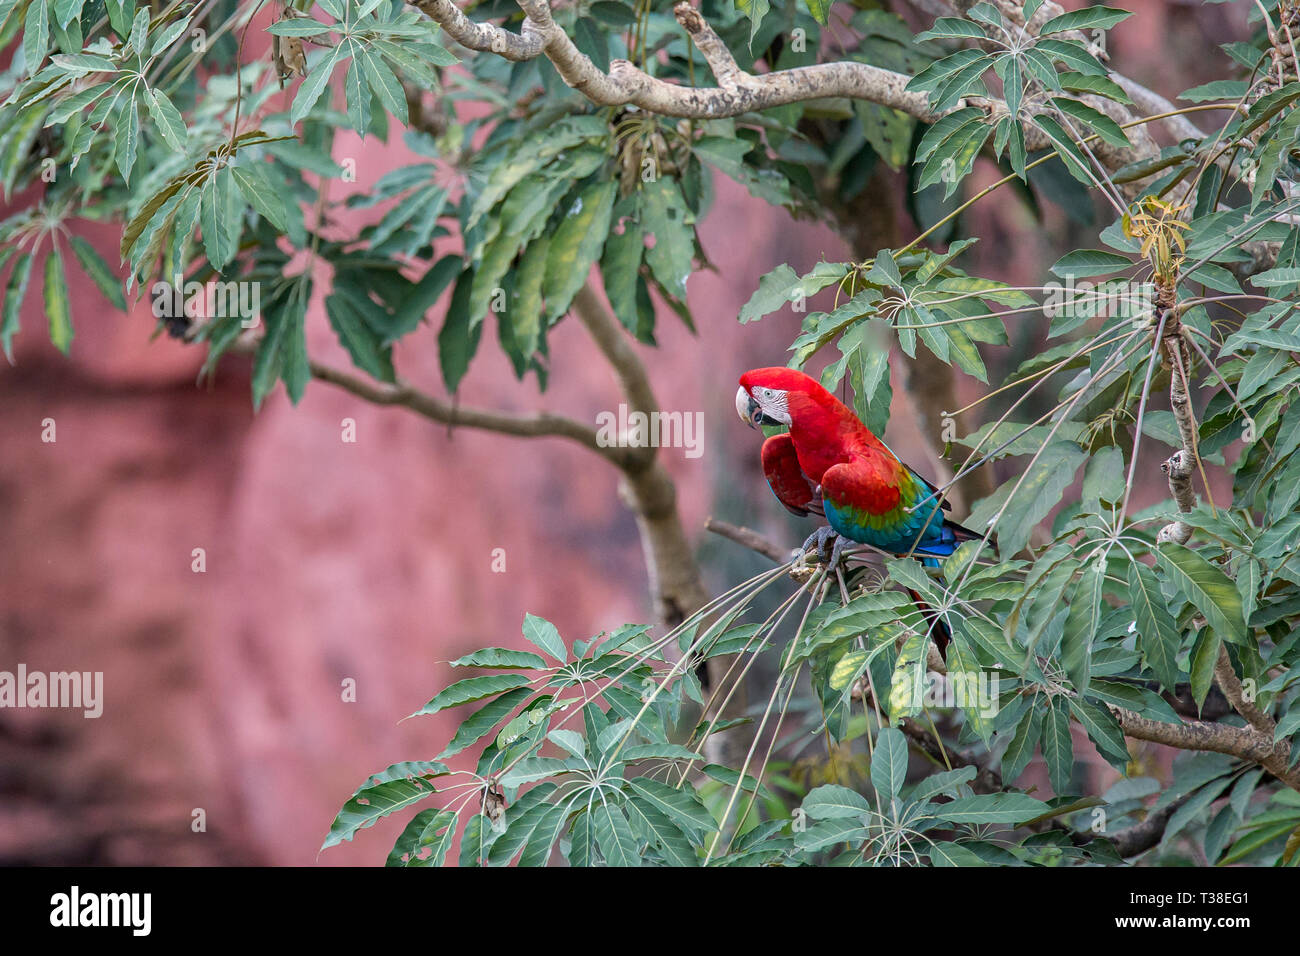 Red-et-Ara vert reposant dans l'arbre, Ara chloropterus, bonite, Mato Grosso do Sul, Brésil Banque D'Images